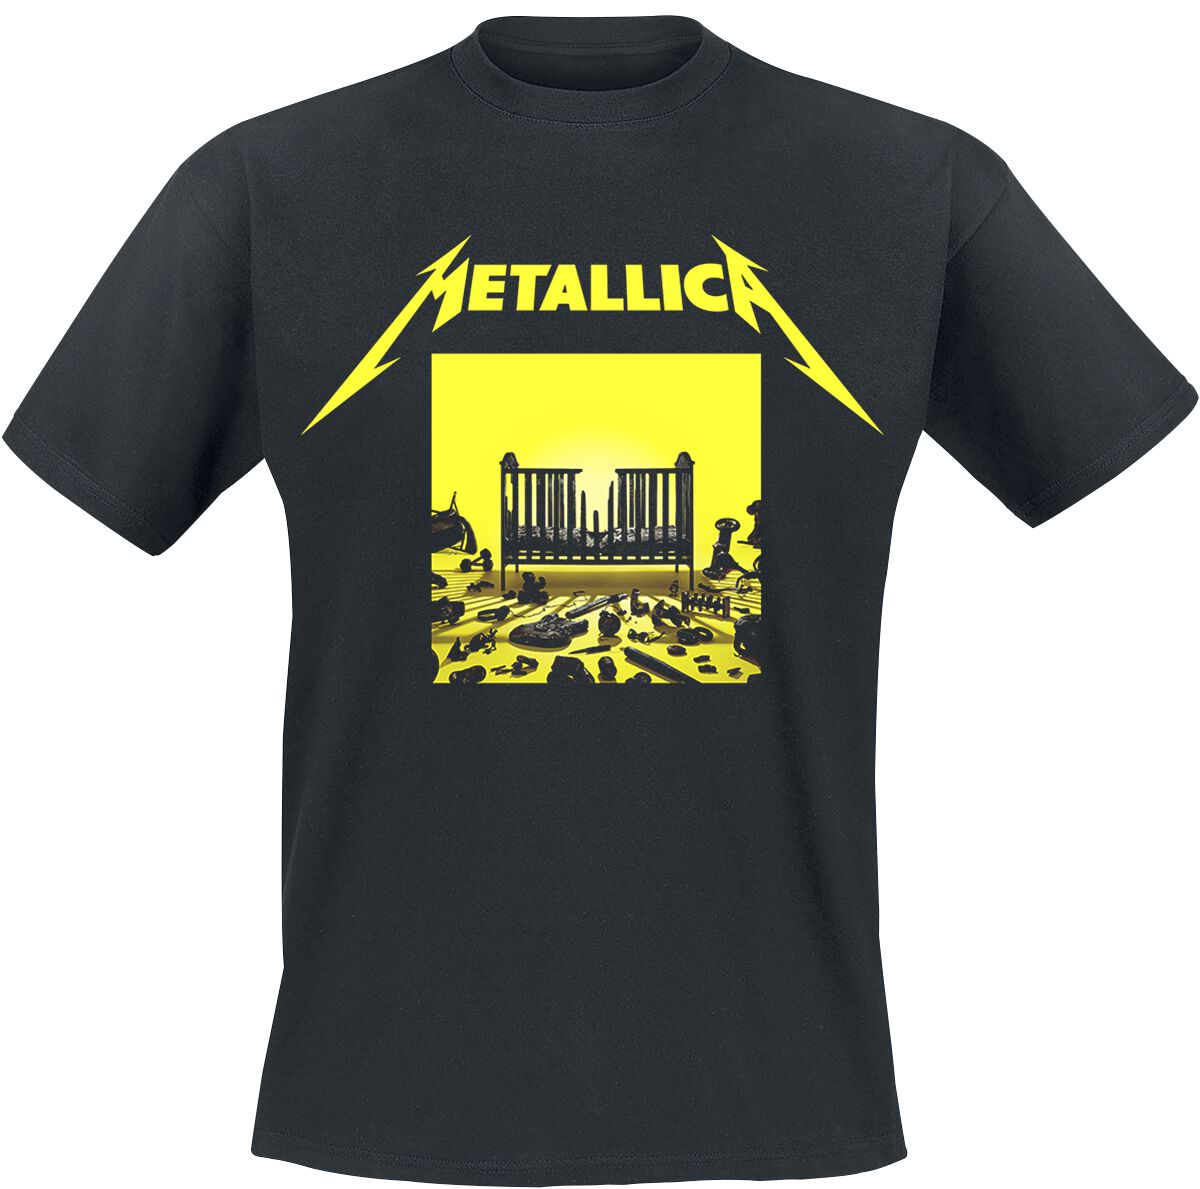 Metallica T-Shirt - M72 Squared Cover - S bis 5XL - für Männer - Größe 3XL - schwarz  - Lizenziertes Merchandise!